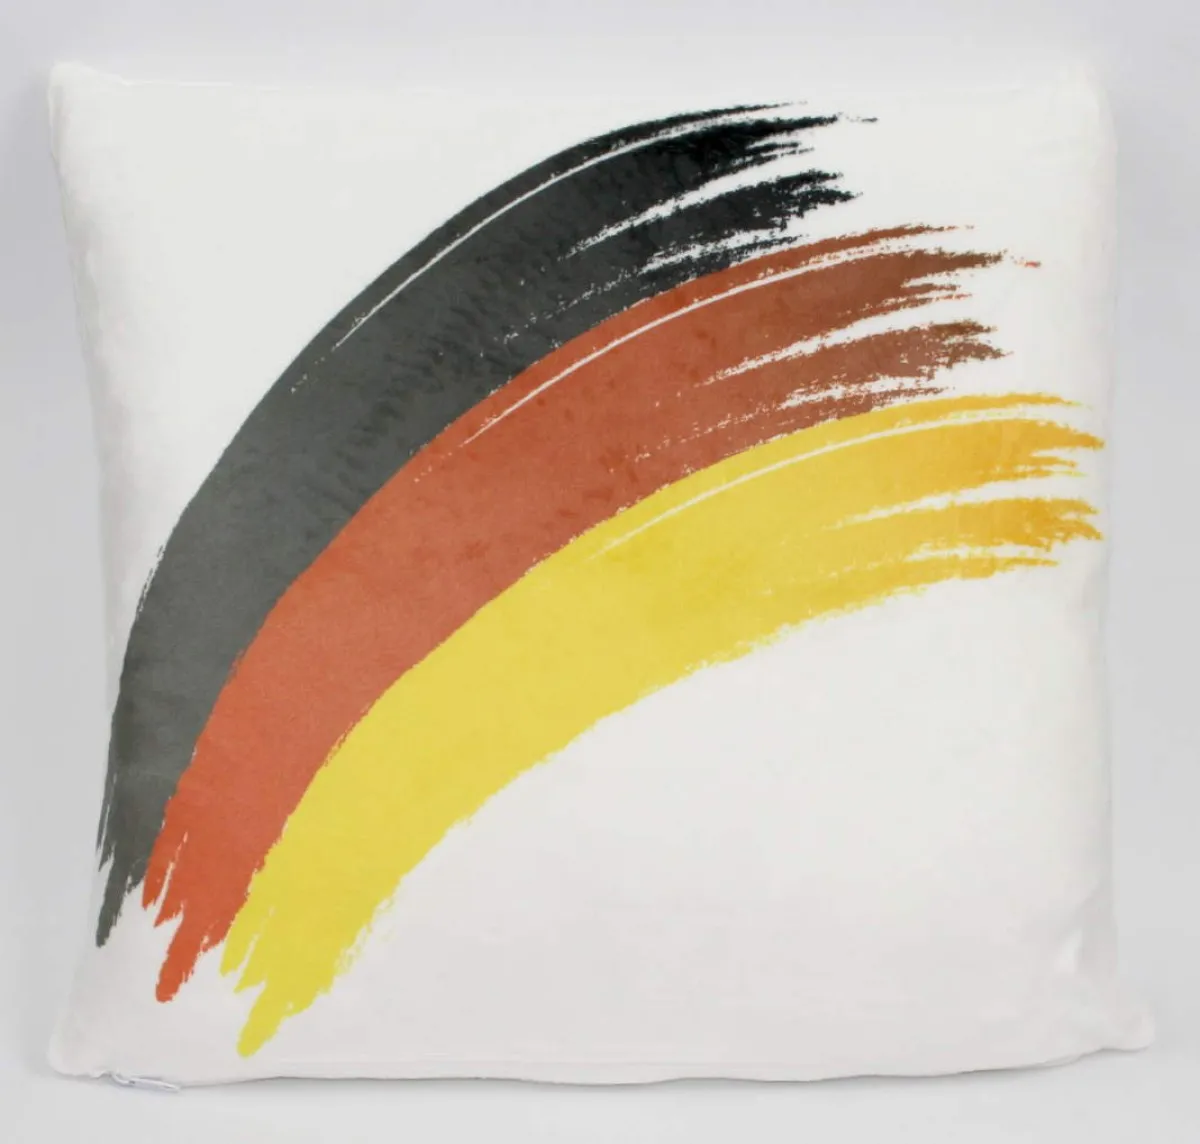 Tyskland-pude med buet flag | flag